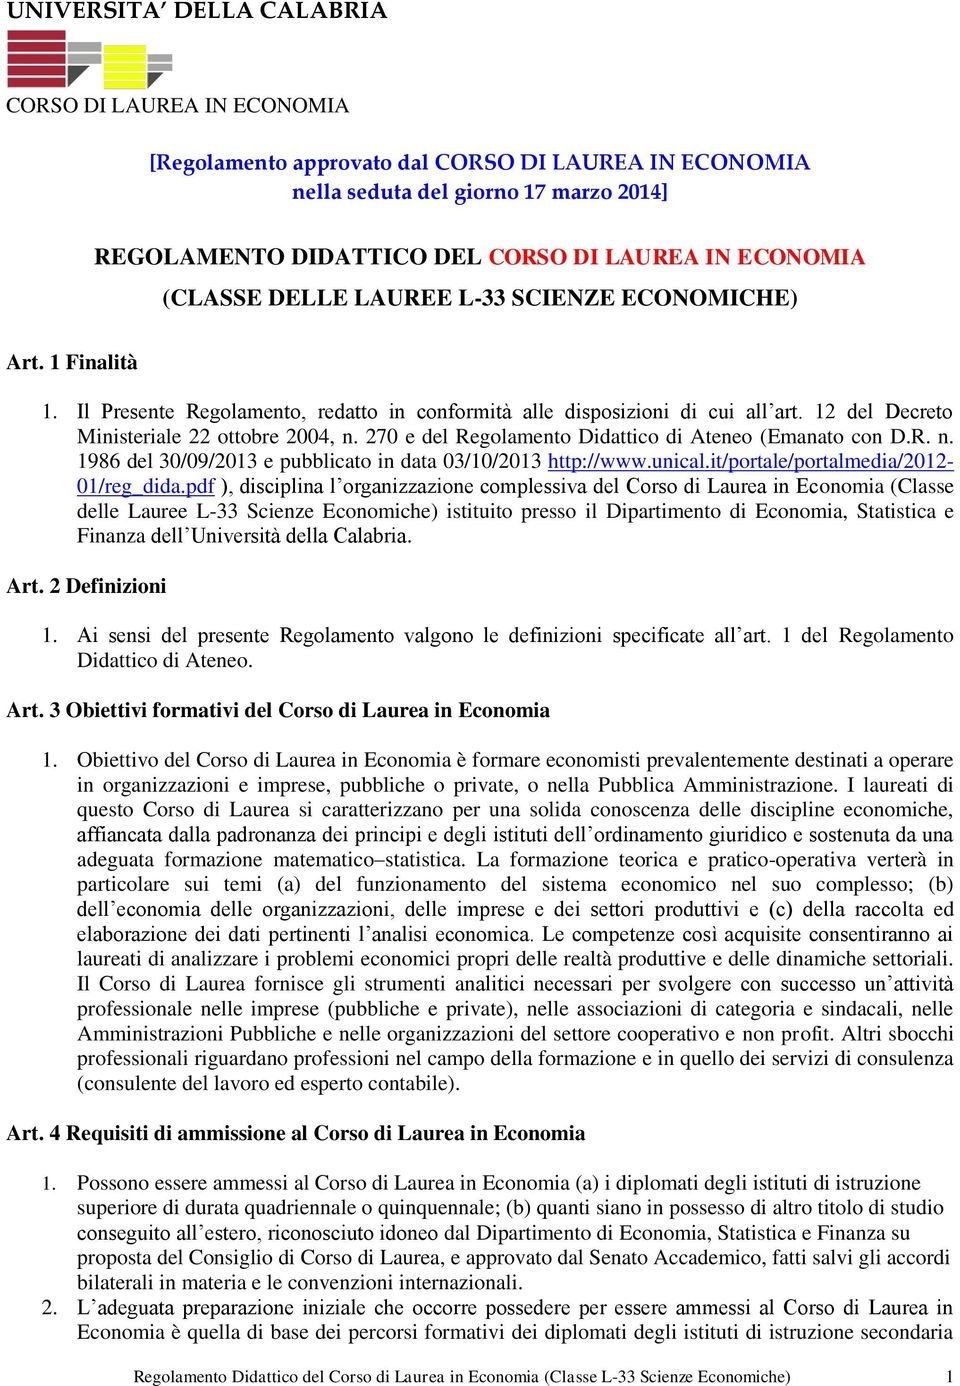 12 del Decreto Ministeriale 22 ottobre 2004, n. 270 e del Regolamento Didattico di Ateneo (Emanato con D.R. n. 1986 del 30/09/2013 e pubblicato in data 03/10/2013 http://www.unical.